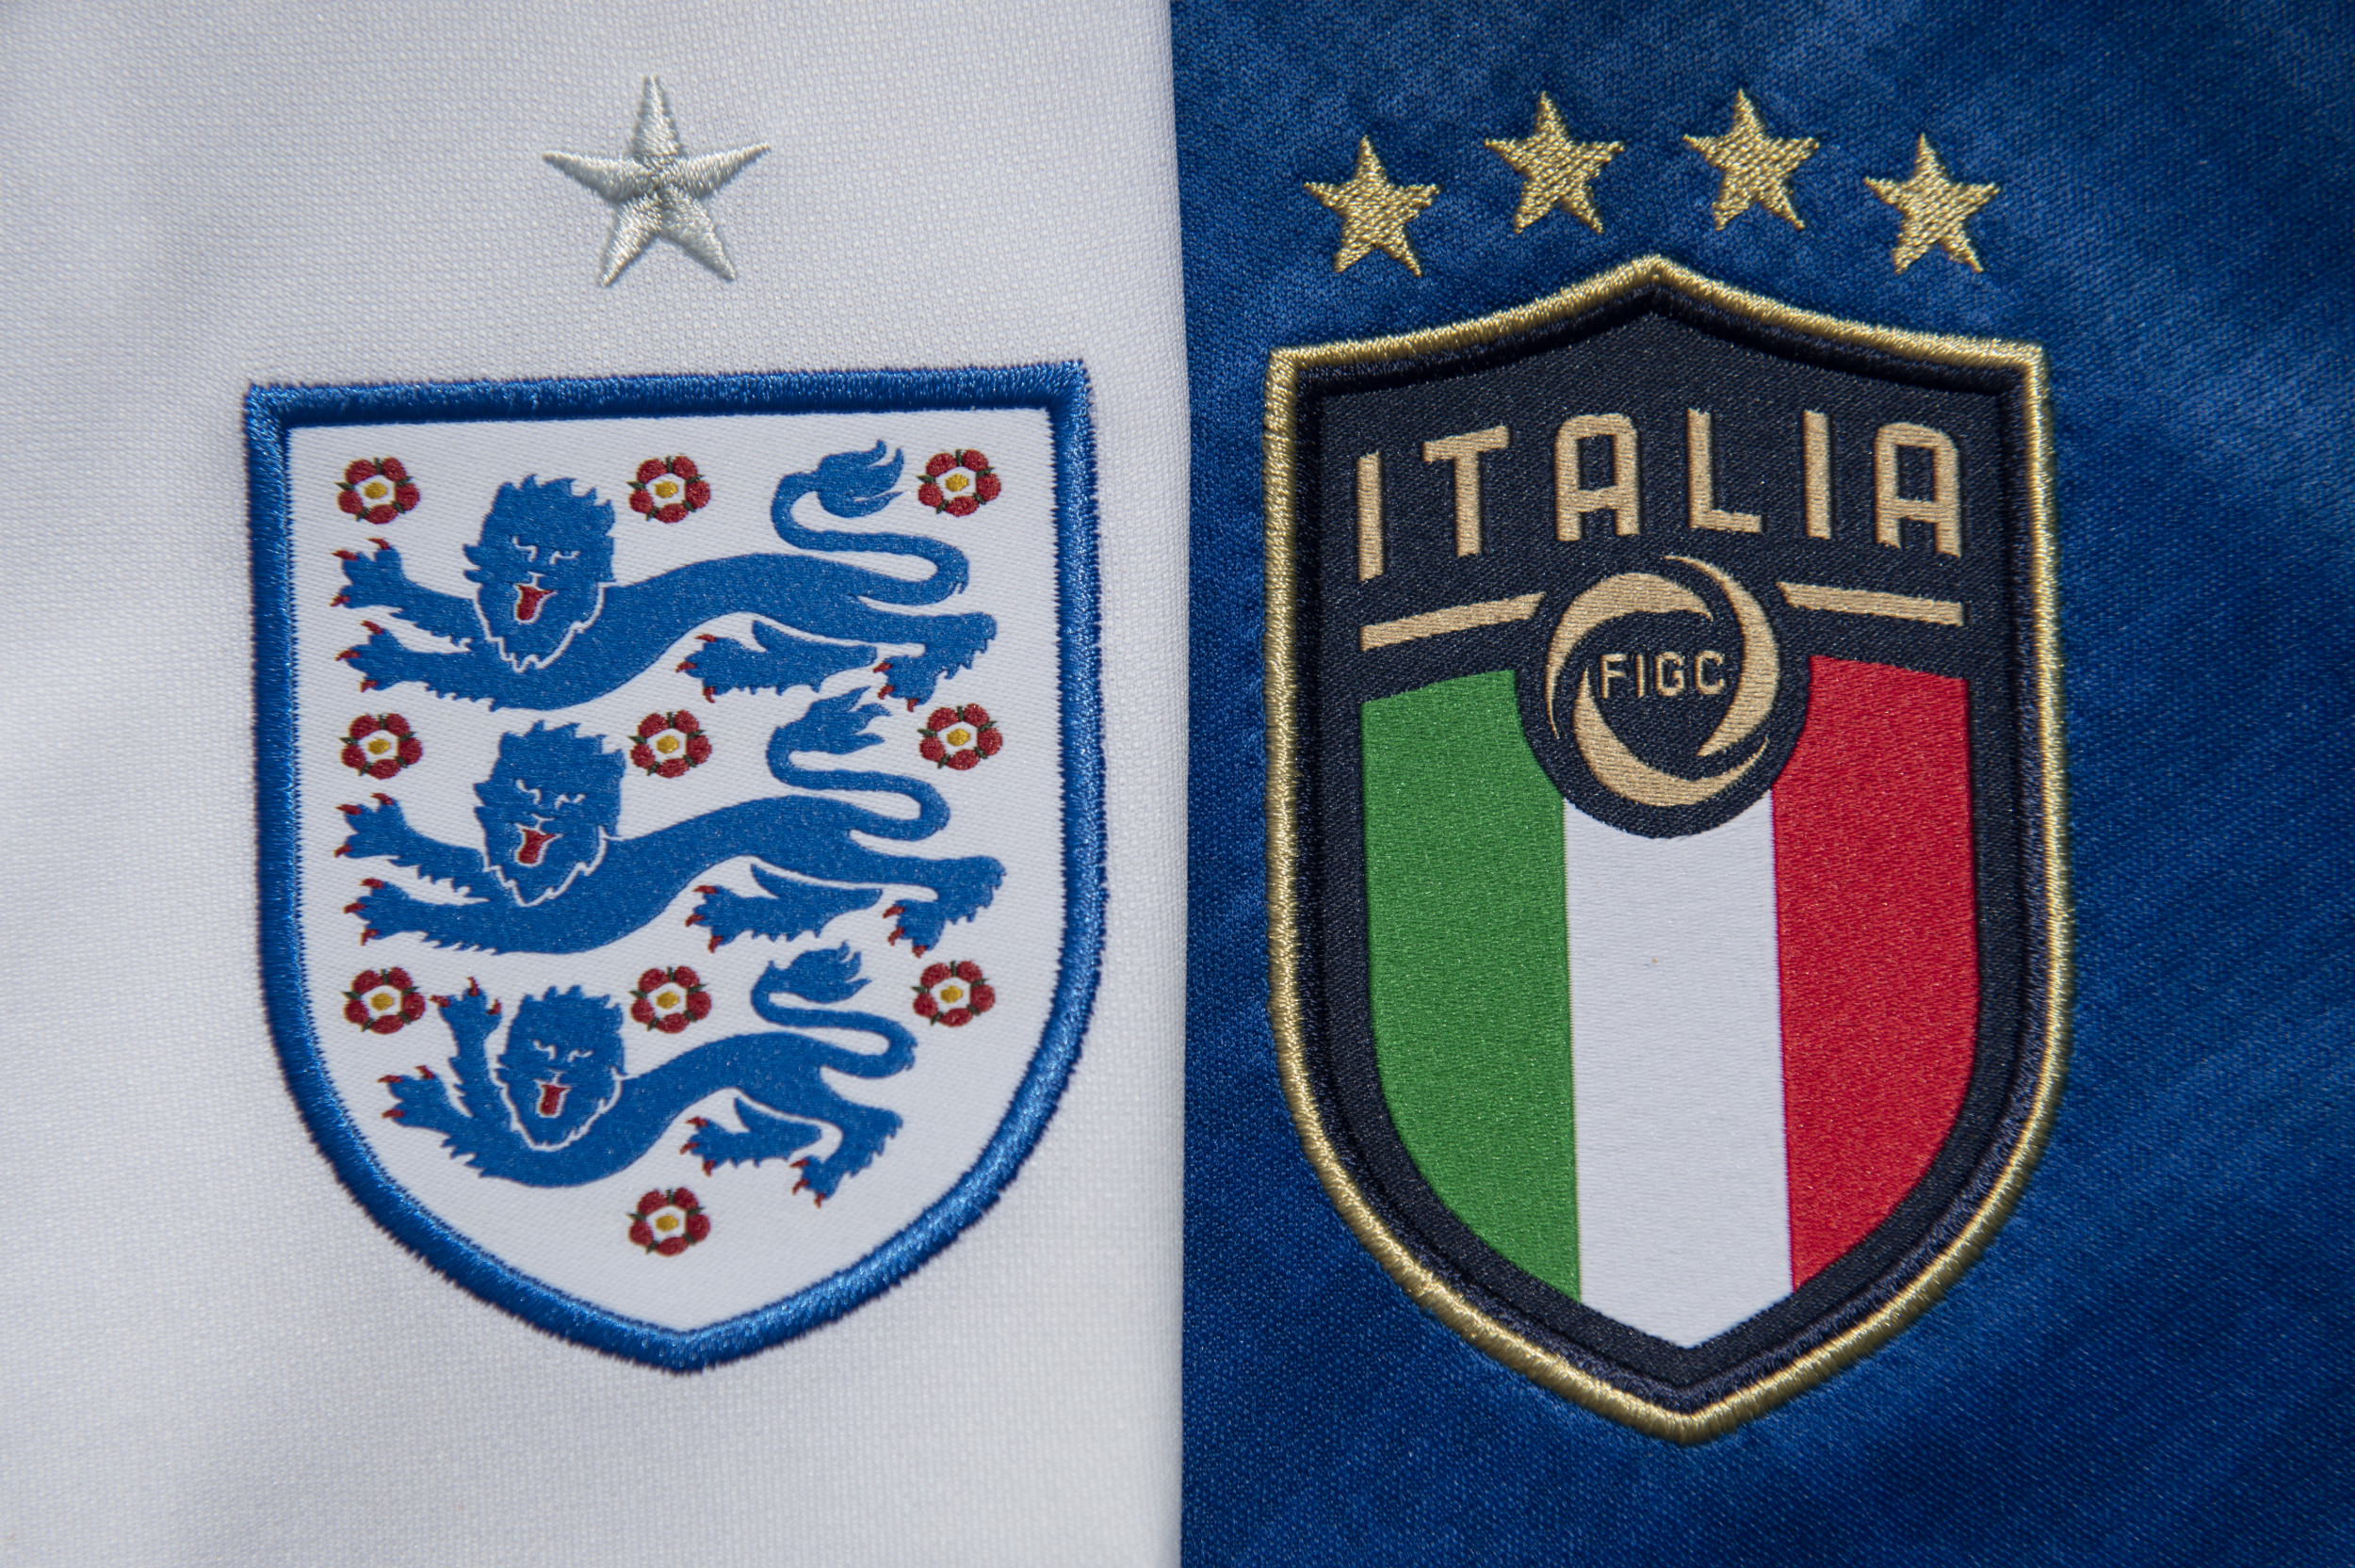 England vs italy final